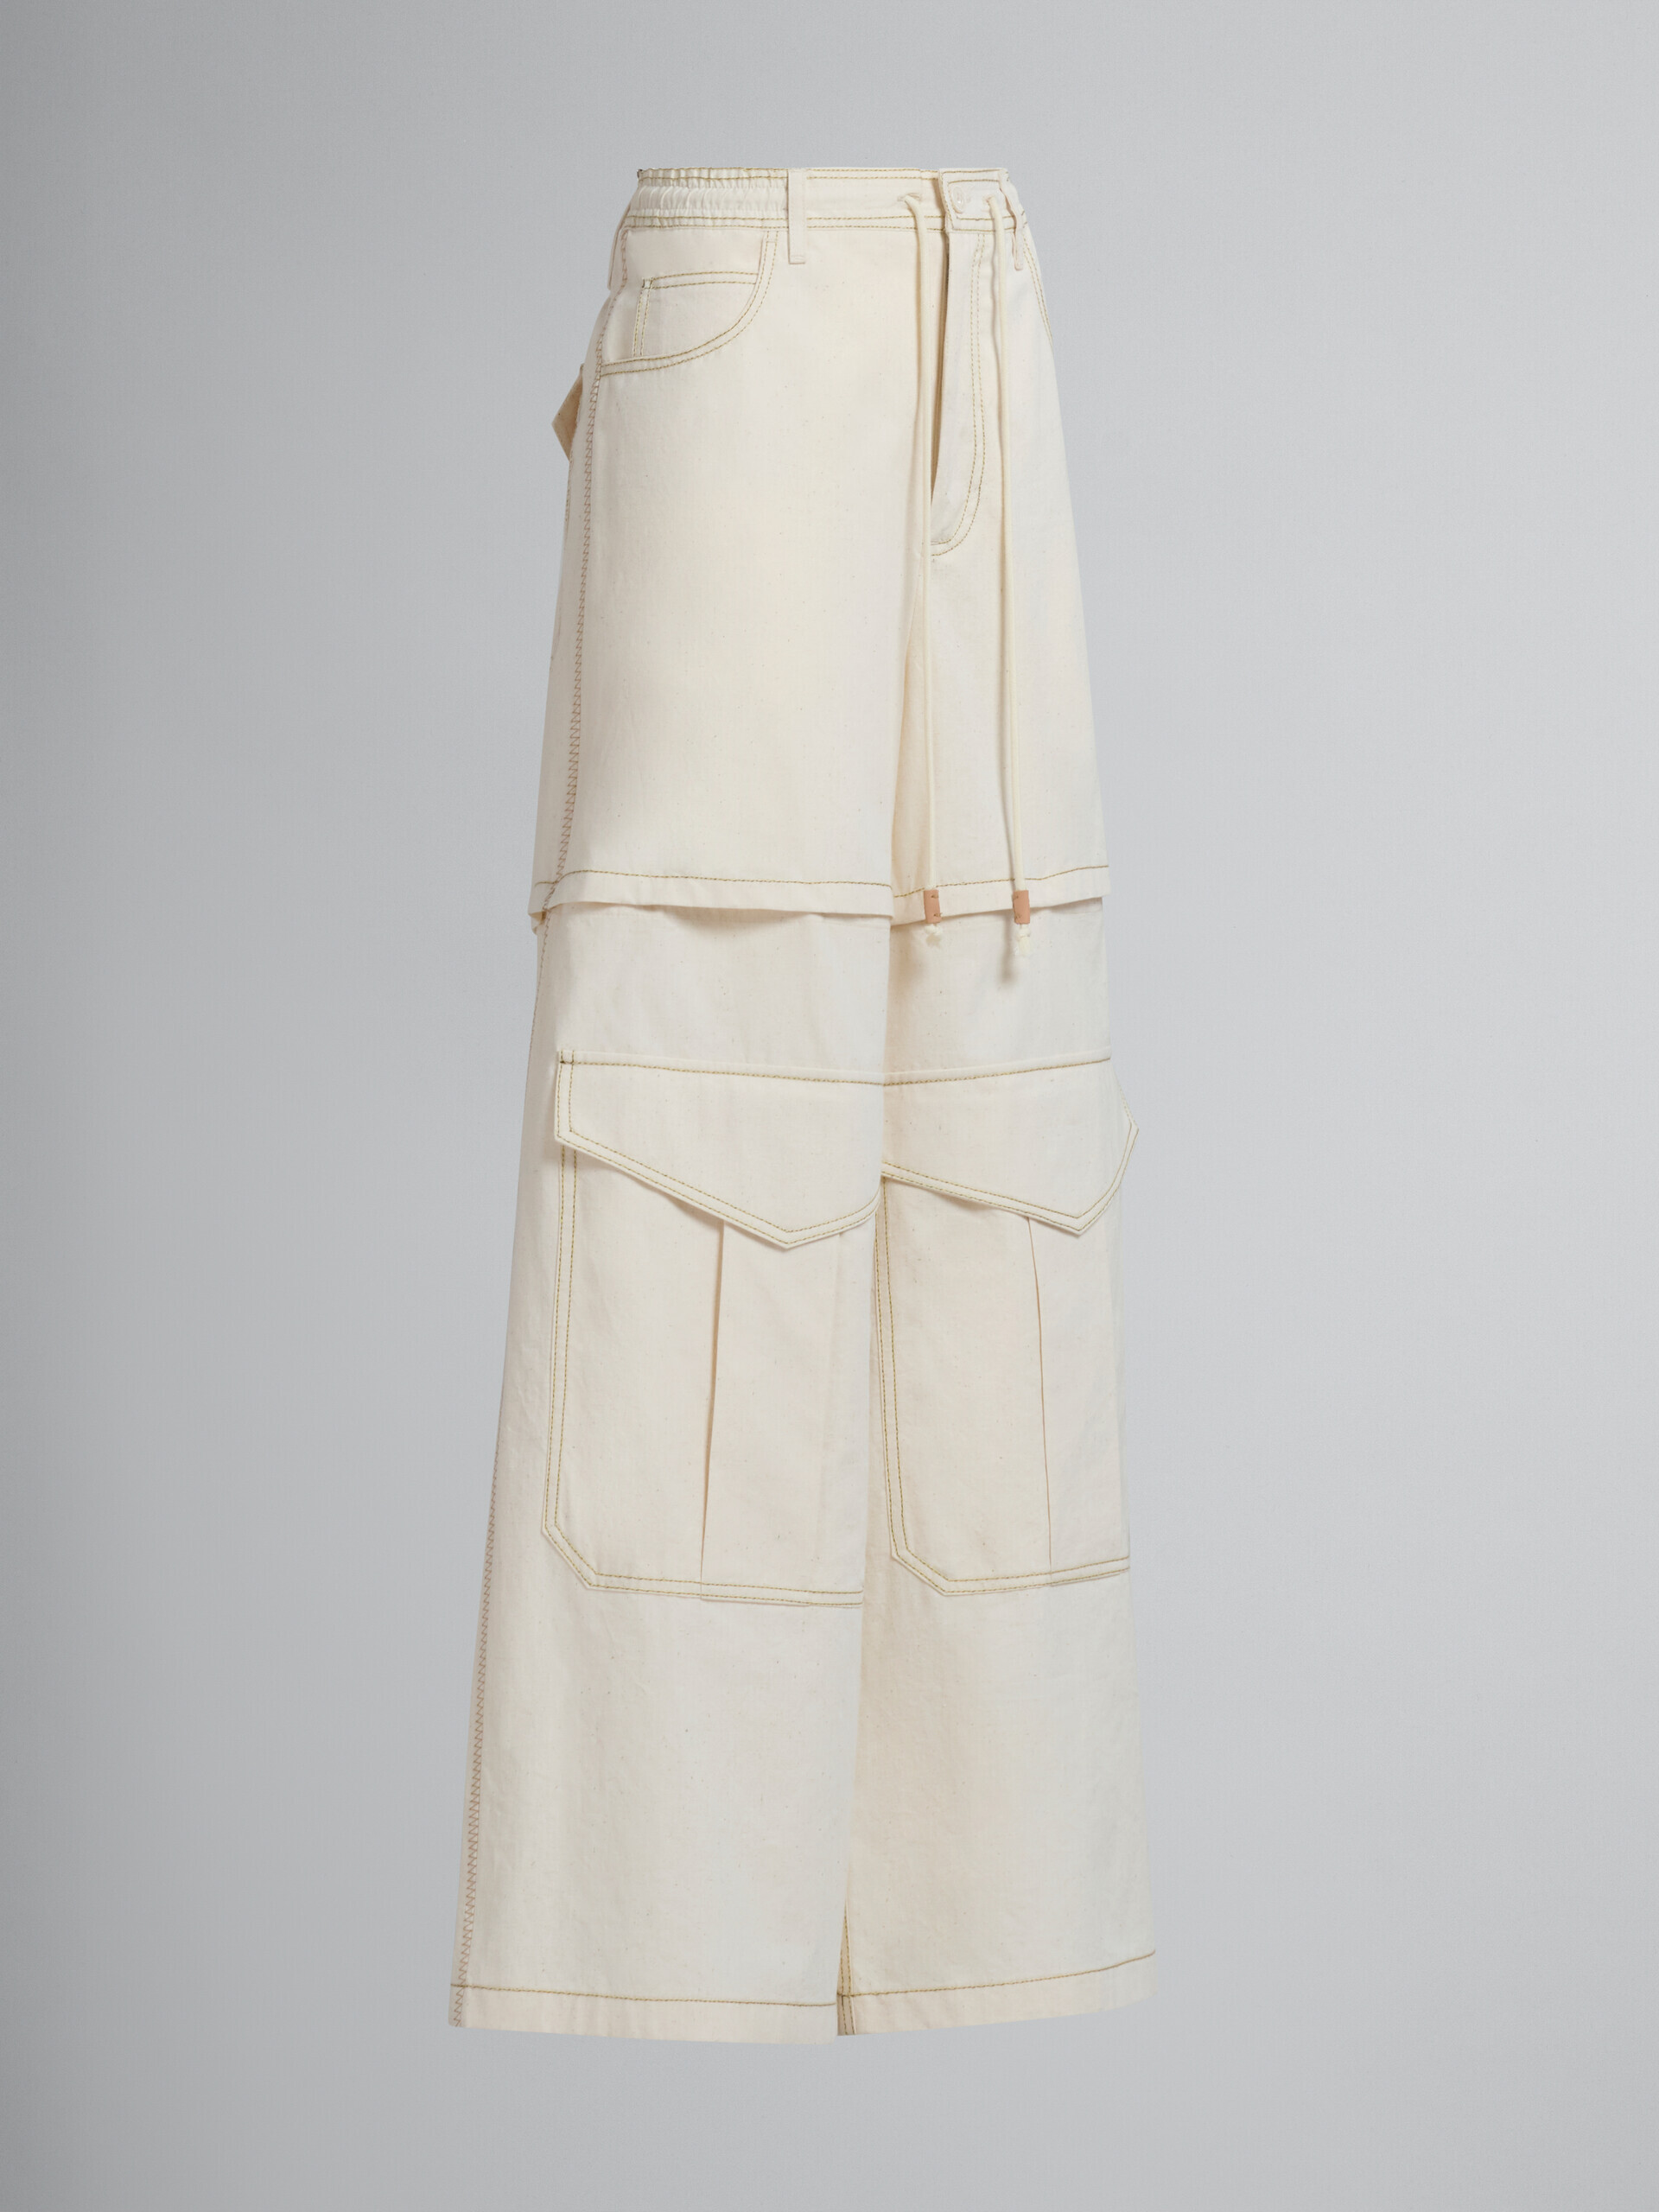 Pantalon cargo Marni en toile de coton organique beige clair avec surpiqûres - Pantalons - Image 2